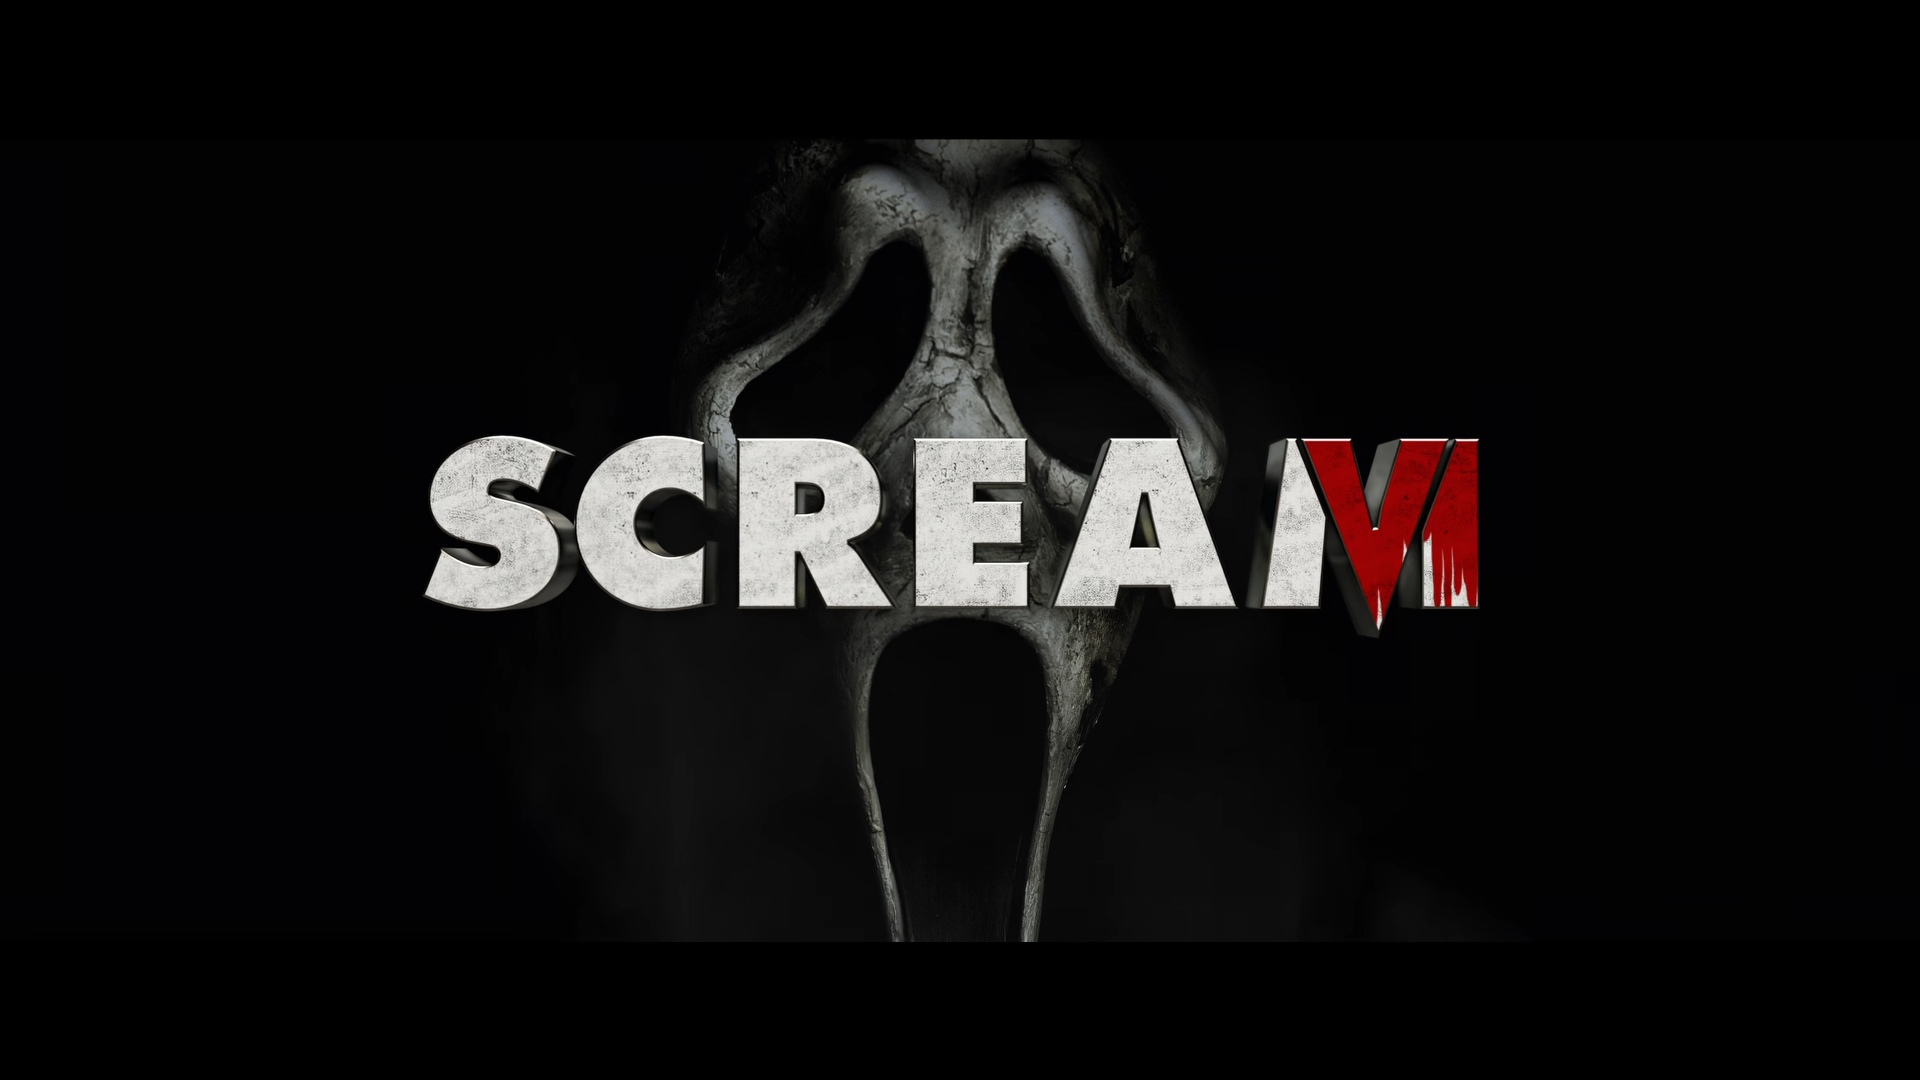 Scream VI official teaser